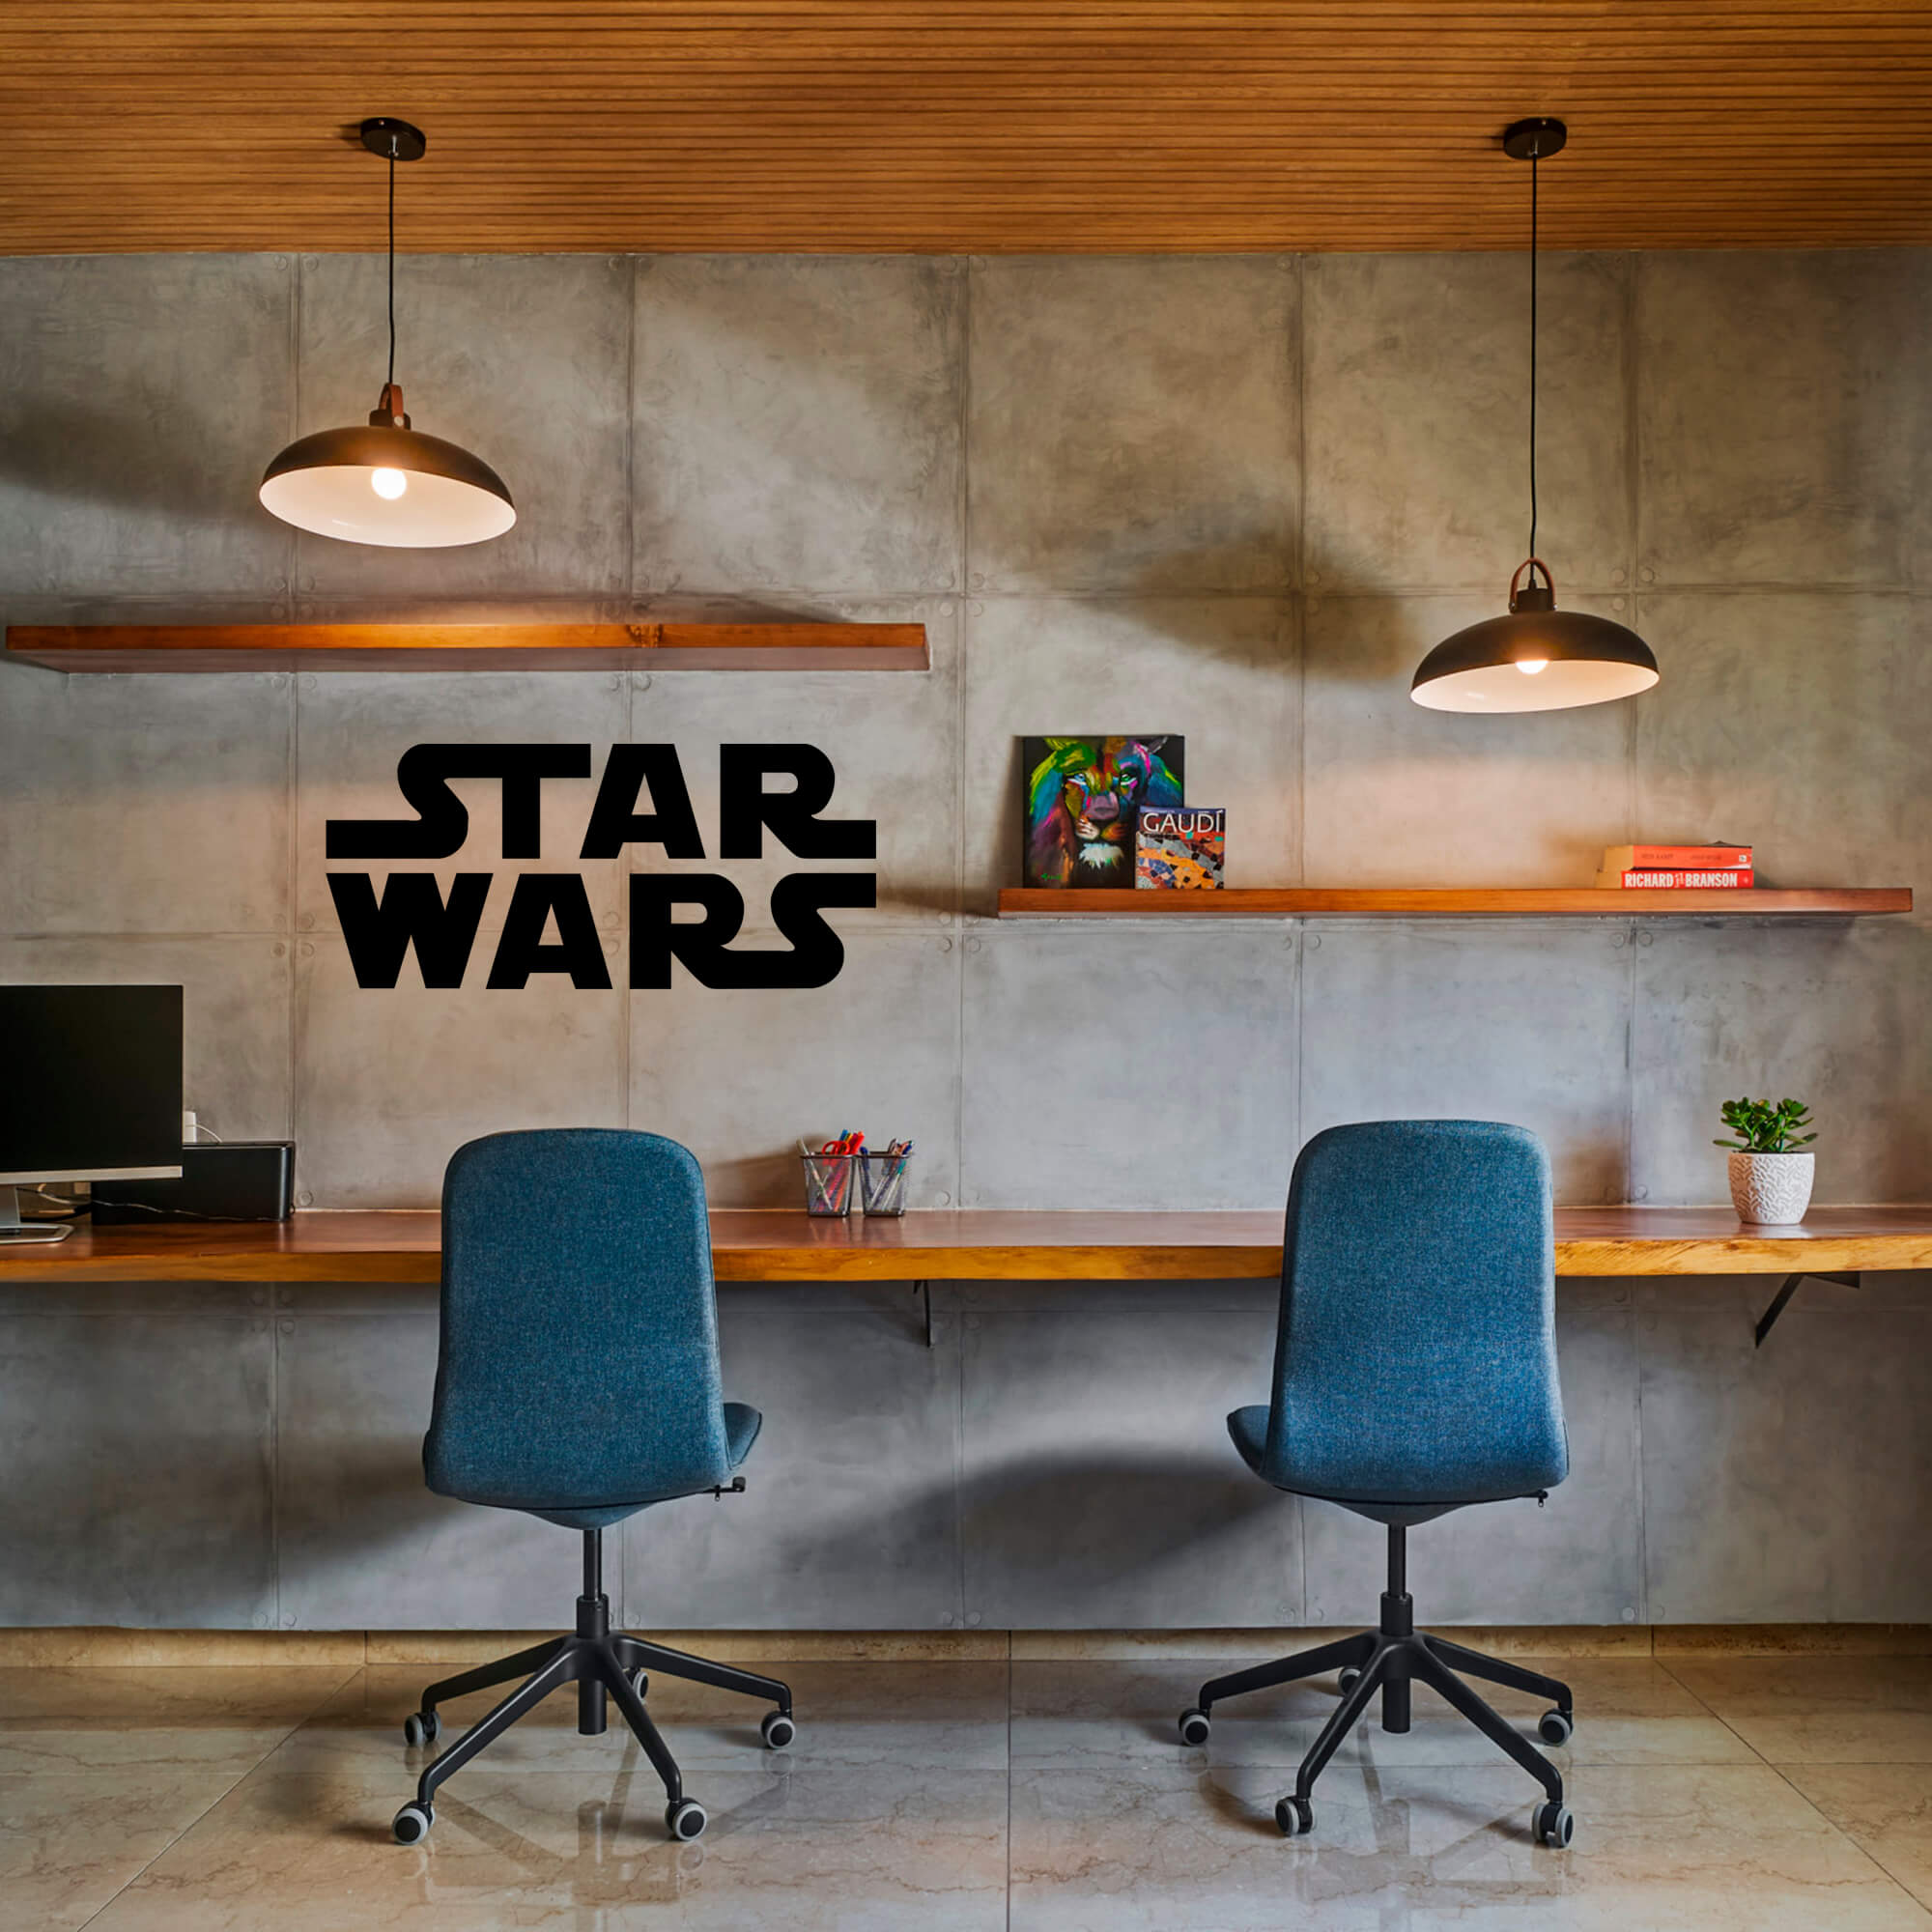 Adesivo de Parede Logo Filme Star Wars Guerra nas Estrelas Decoração Geek